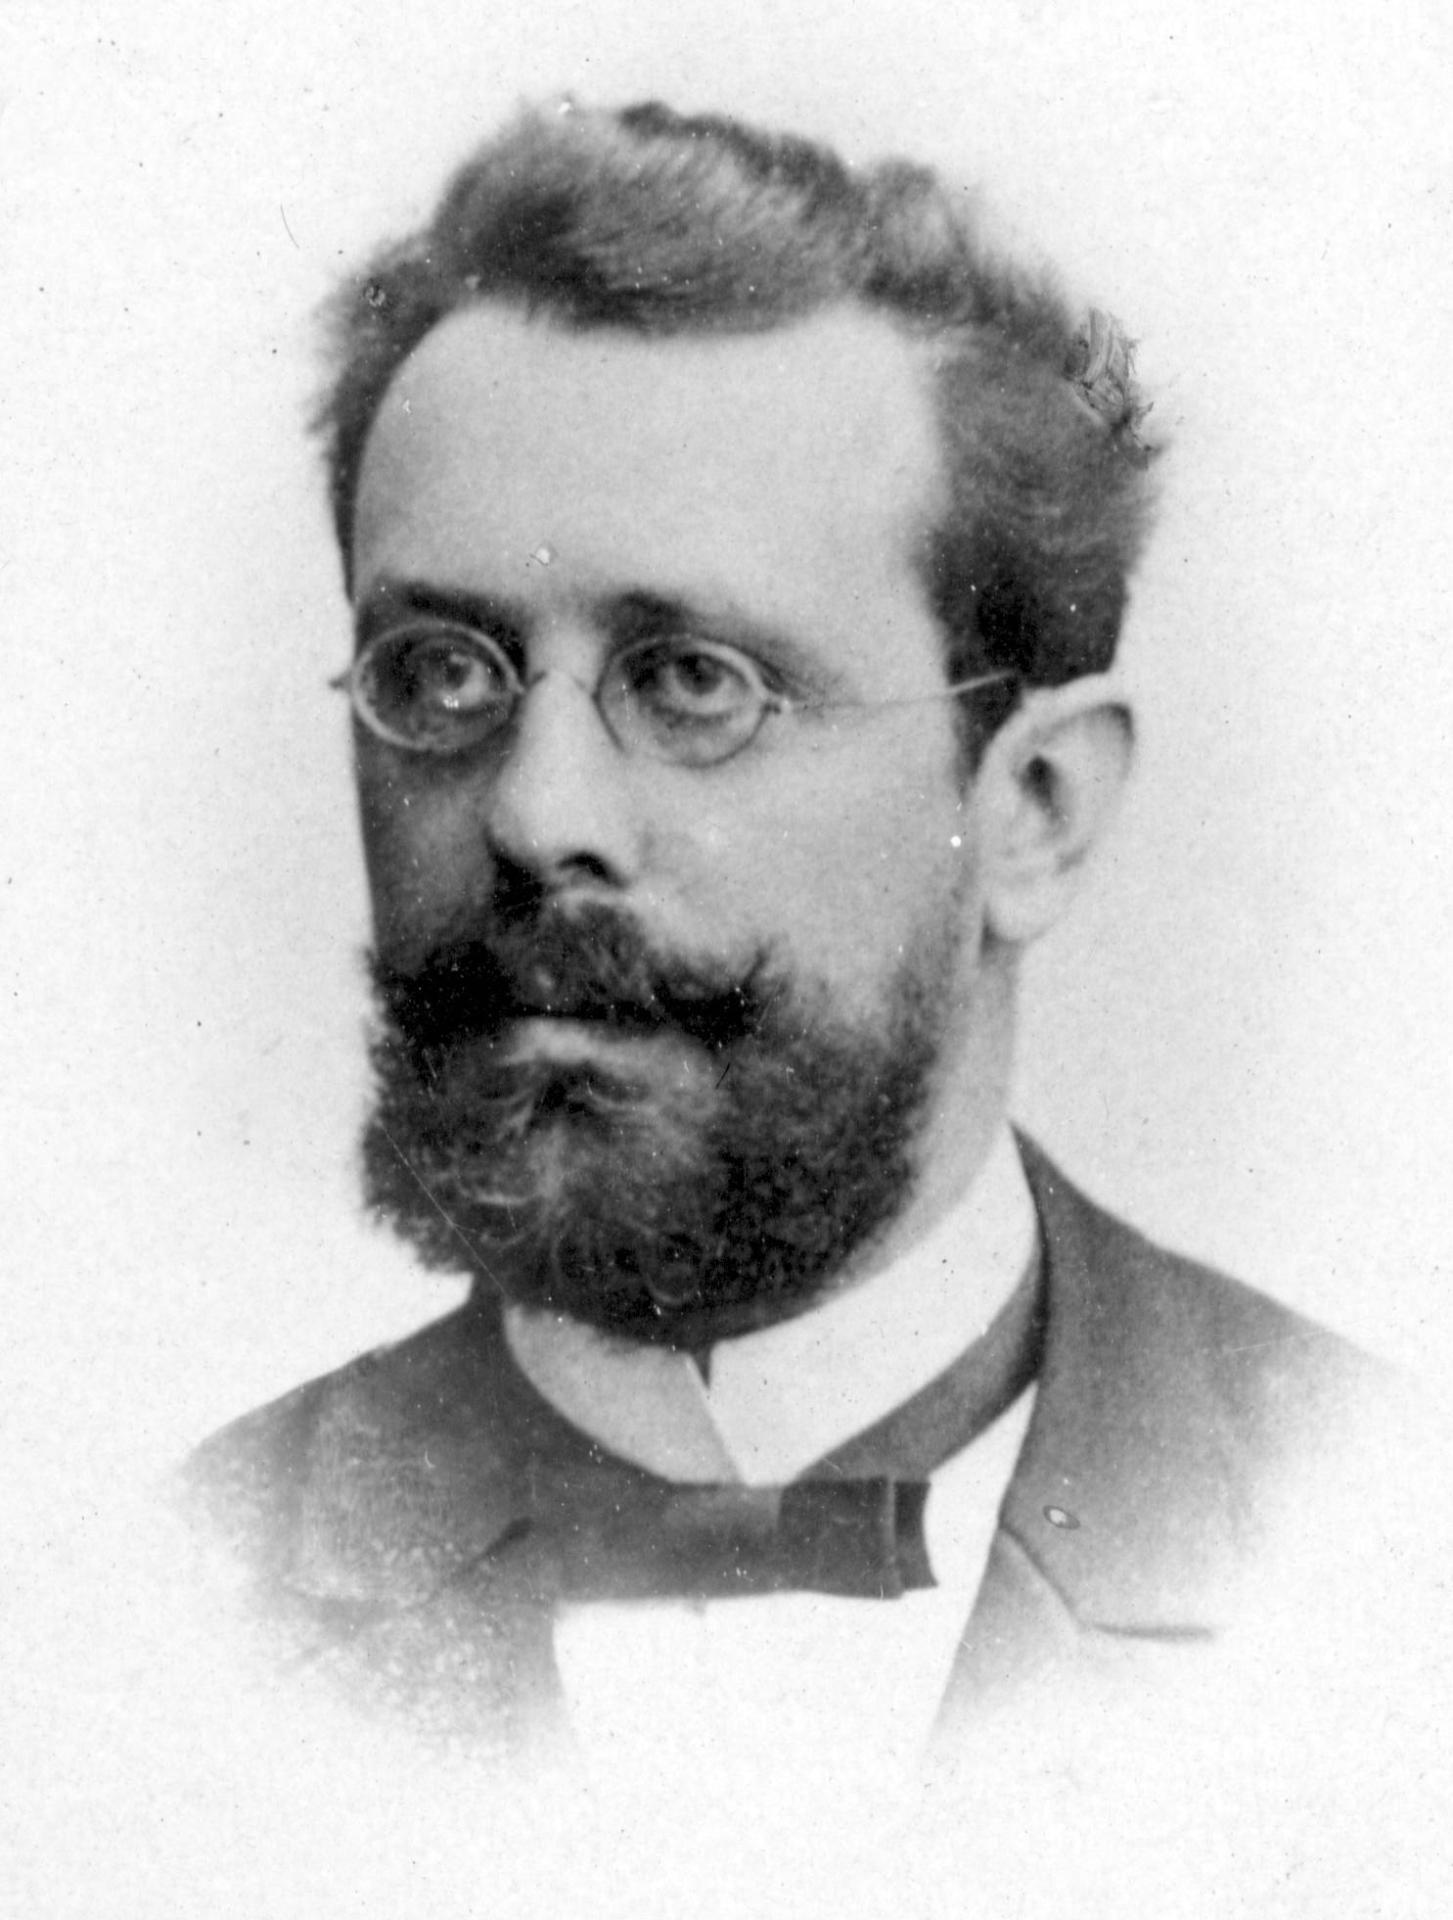 Pastor Hartwig Carl Heinrich August Wilhelm Christian Brasch